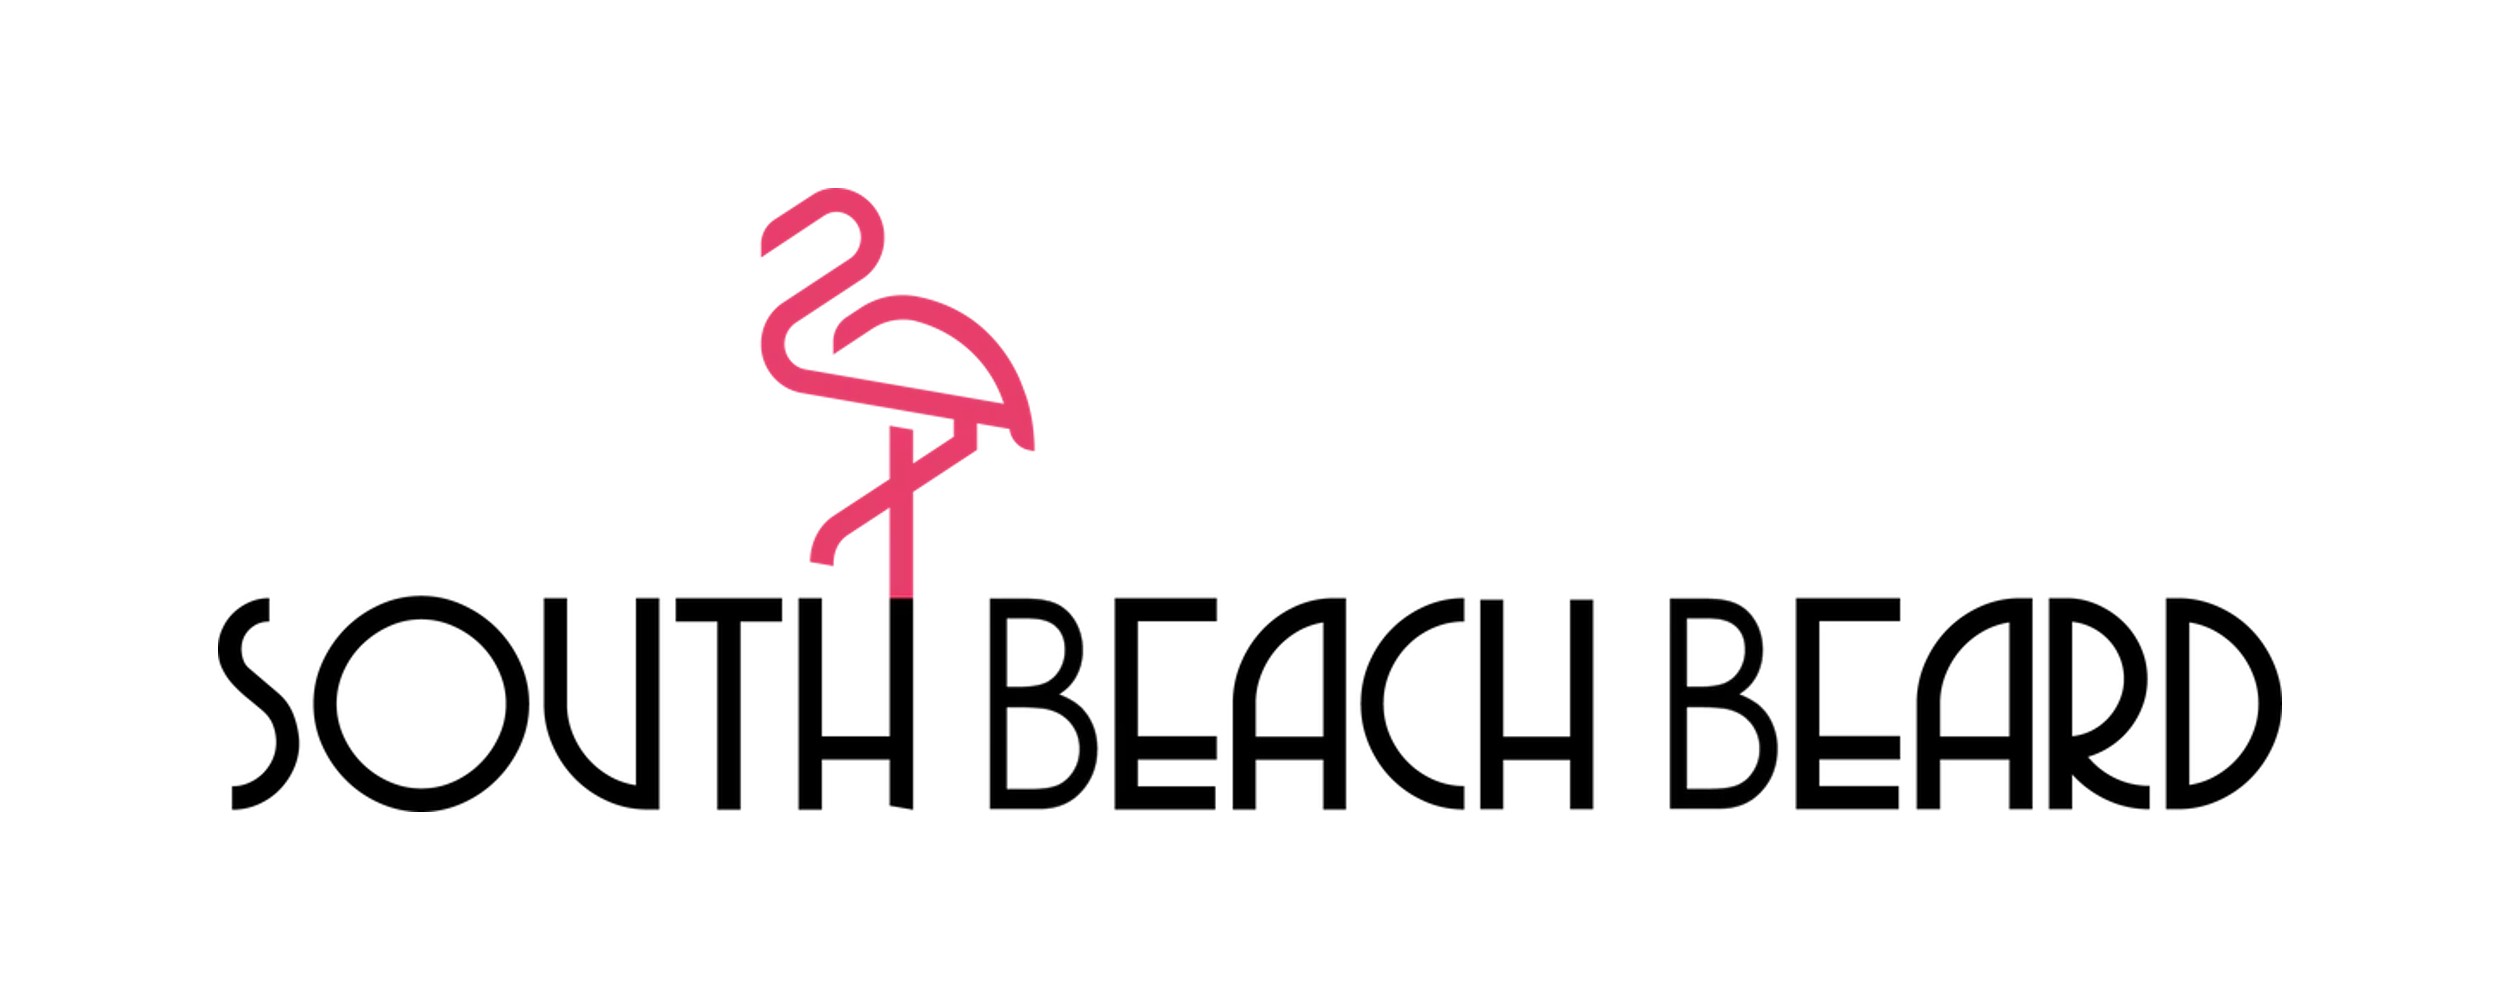 South Beach Beard